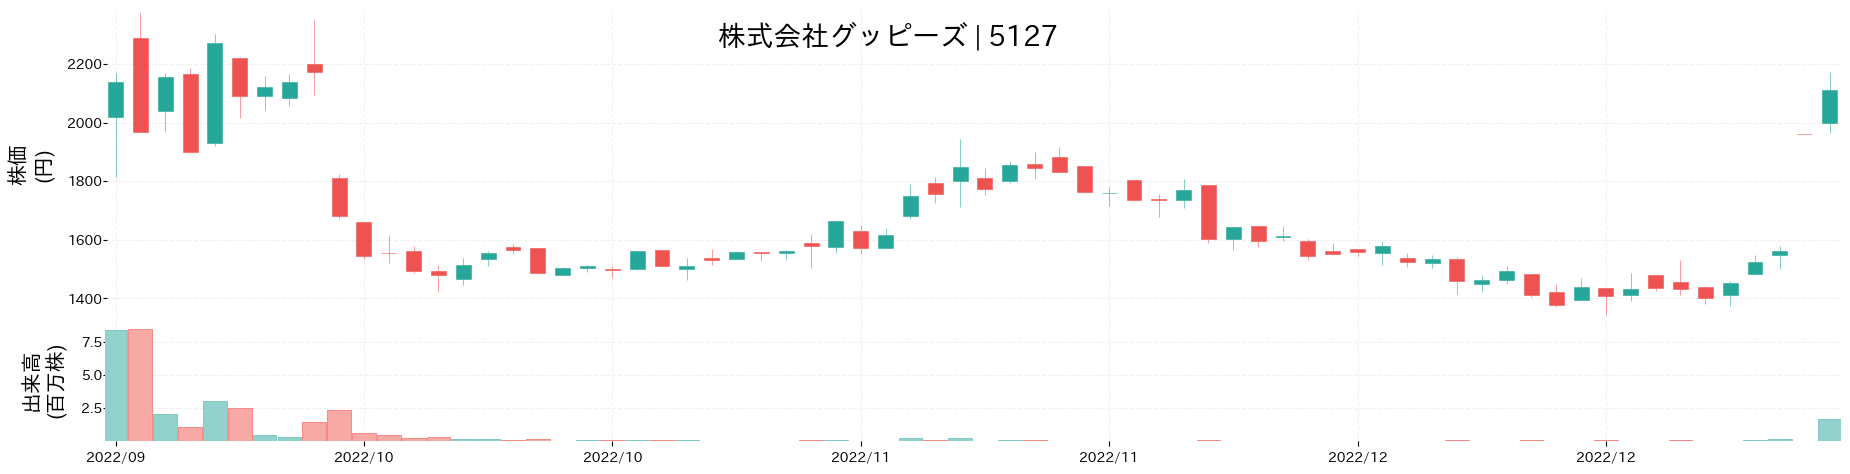 グッピーズの株価推移(2022)